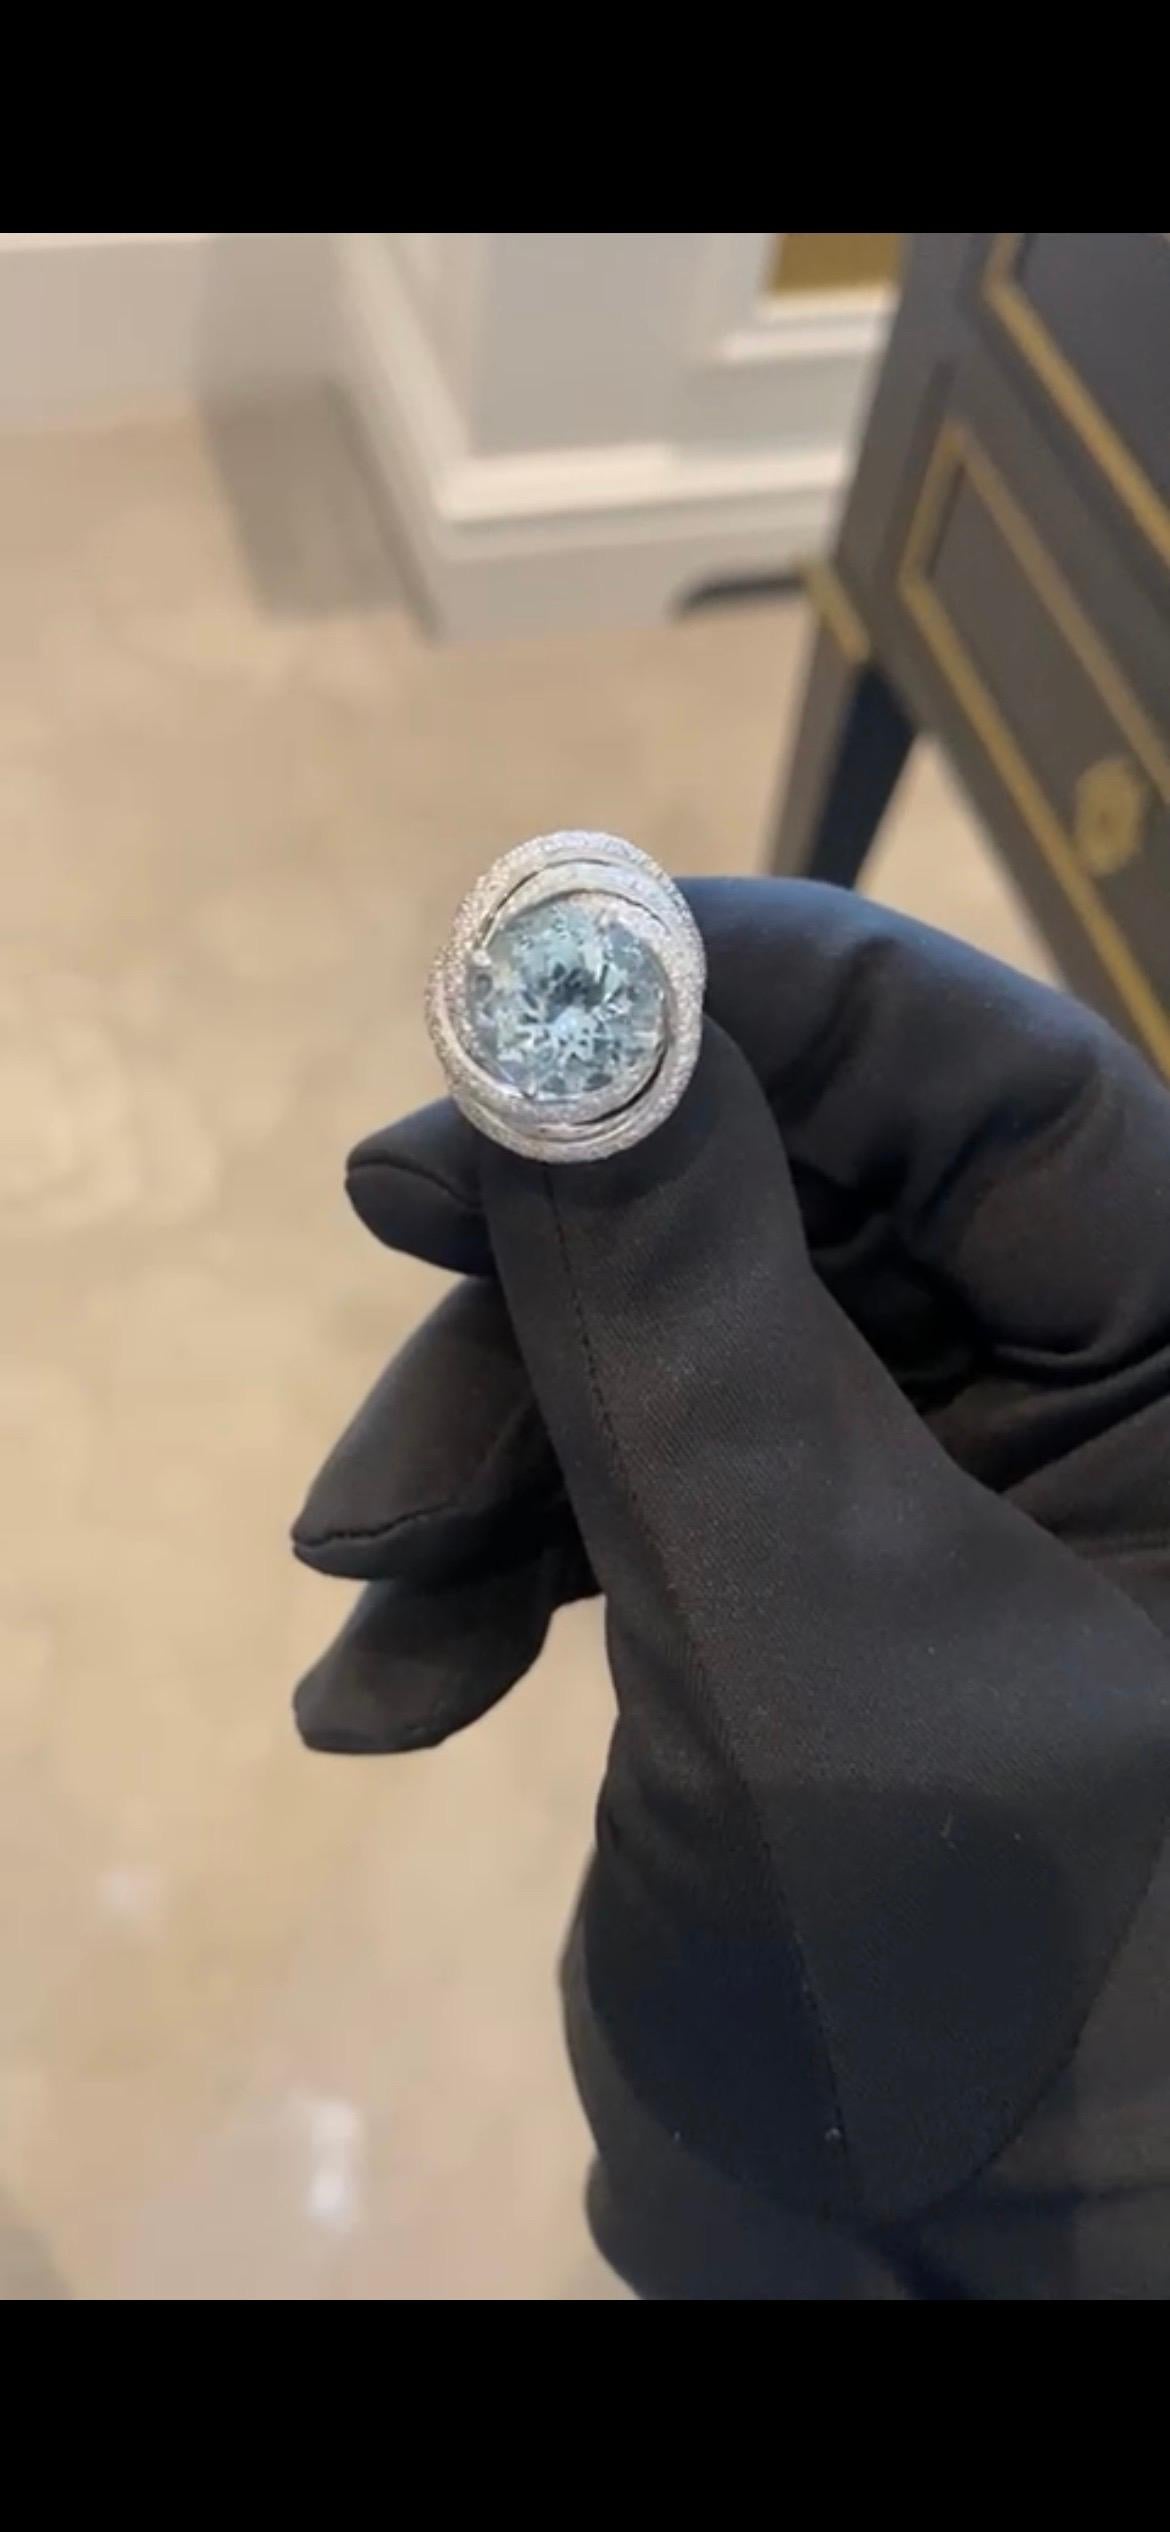 Very rare Cartier Aquamarine and Diamond Ring 

Aquamarine 5.76 carat 

272 diamonds 1.92 carat